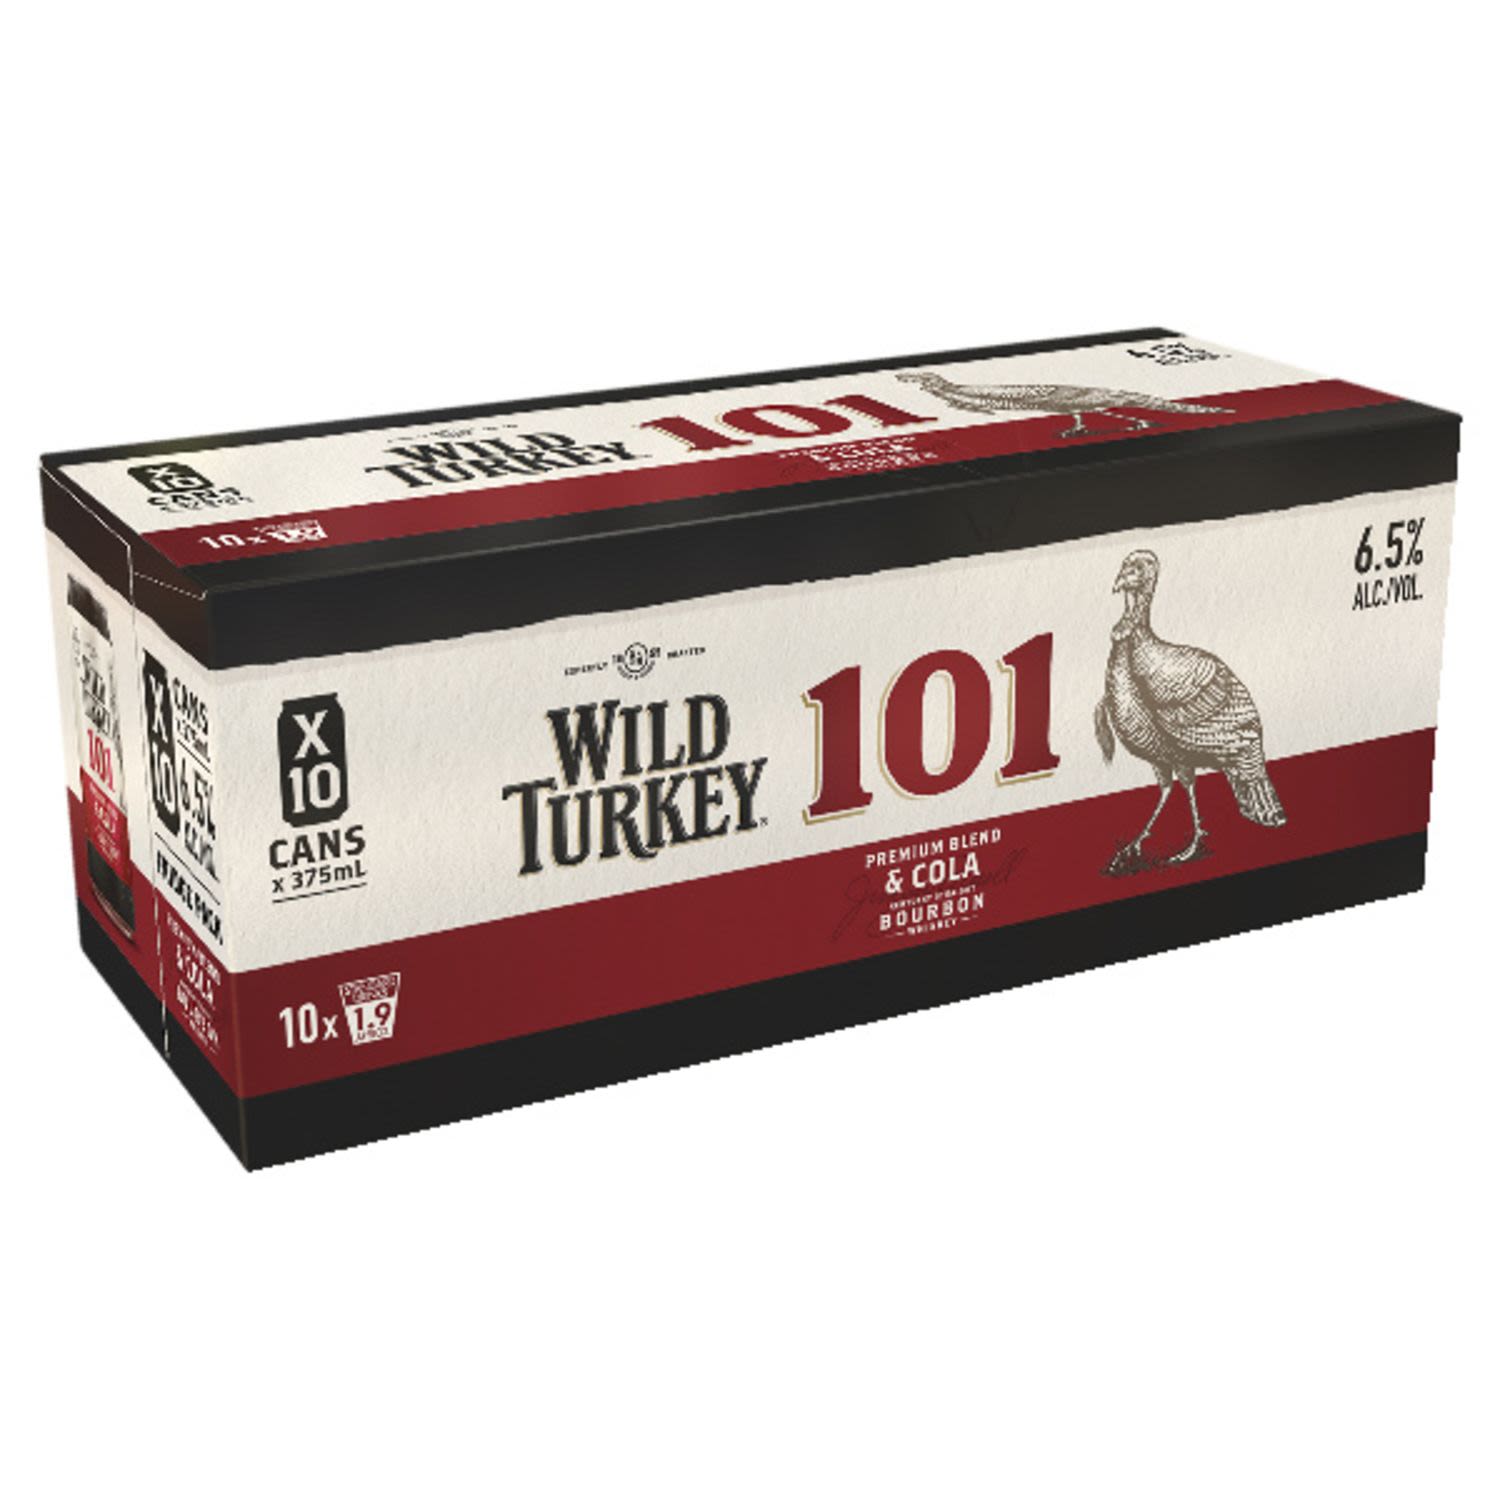 Wild Turkey 101 Bourbon & Cola Can 375mL 10 Pack